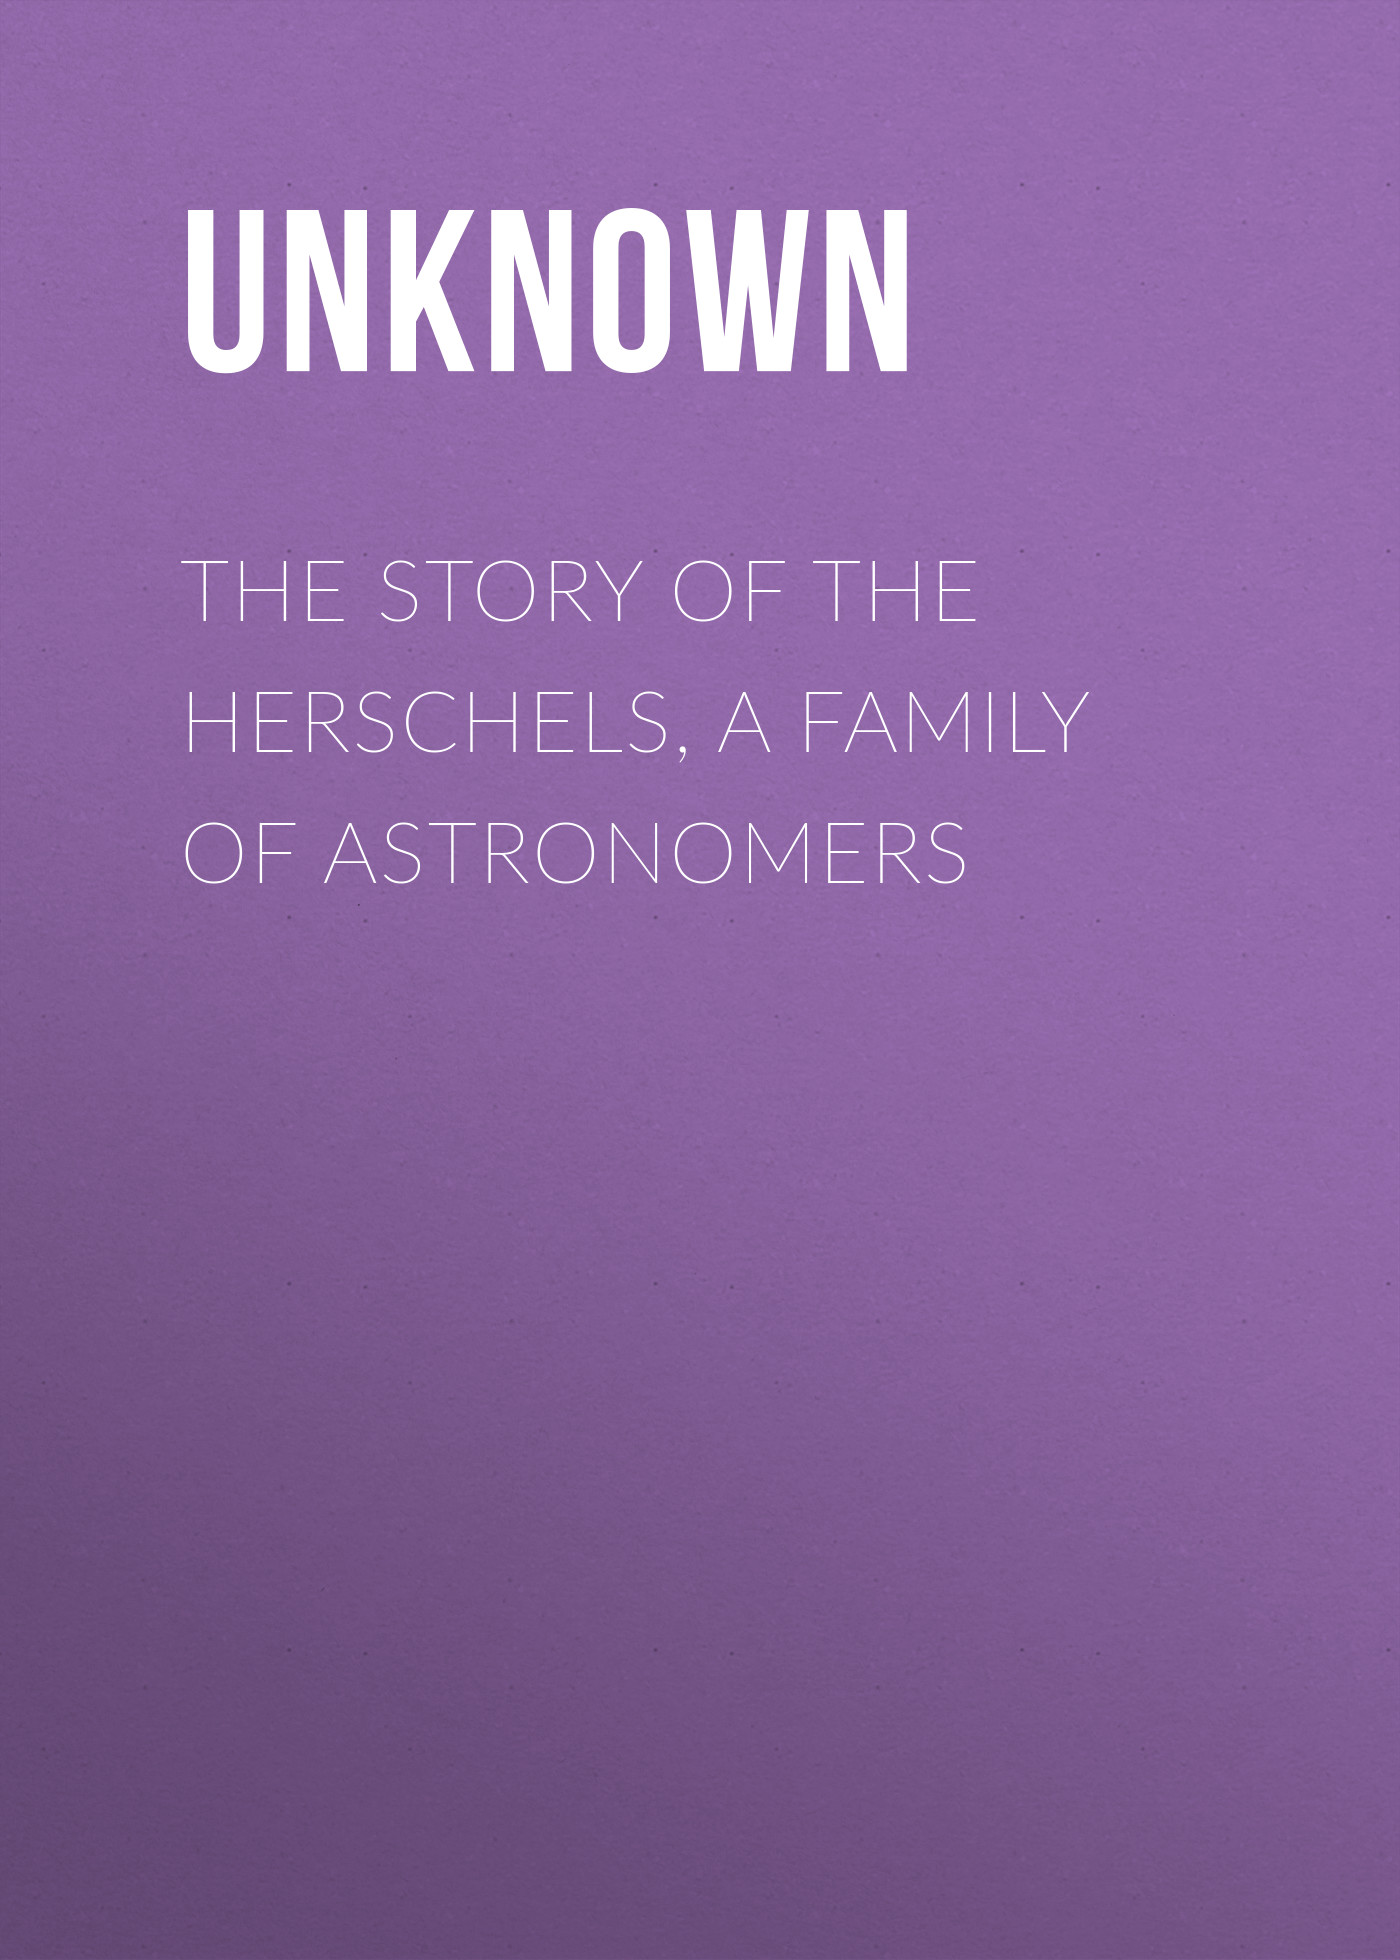 Книга The Story of the Herschels, a Family of Astronomers из серии , созданная Unknown Unknown, может относится к жанру Биографии и Мемуары, Физика, Зарубежная старинная литература. Стоимость электронной книги The Story of the Herschels, a Family of Astronomers с идентификатором 35505547 составляет 0 руб.